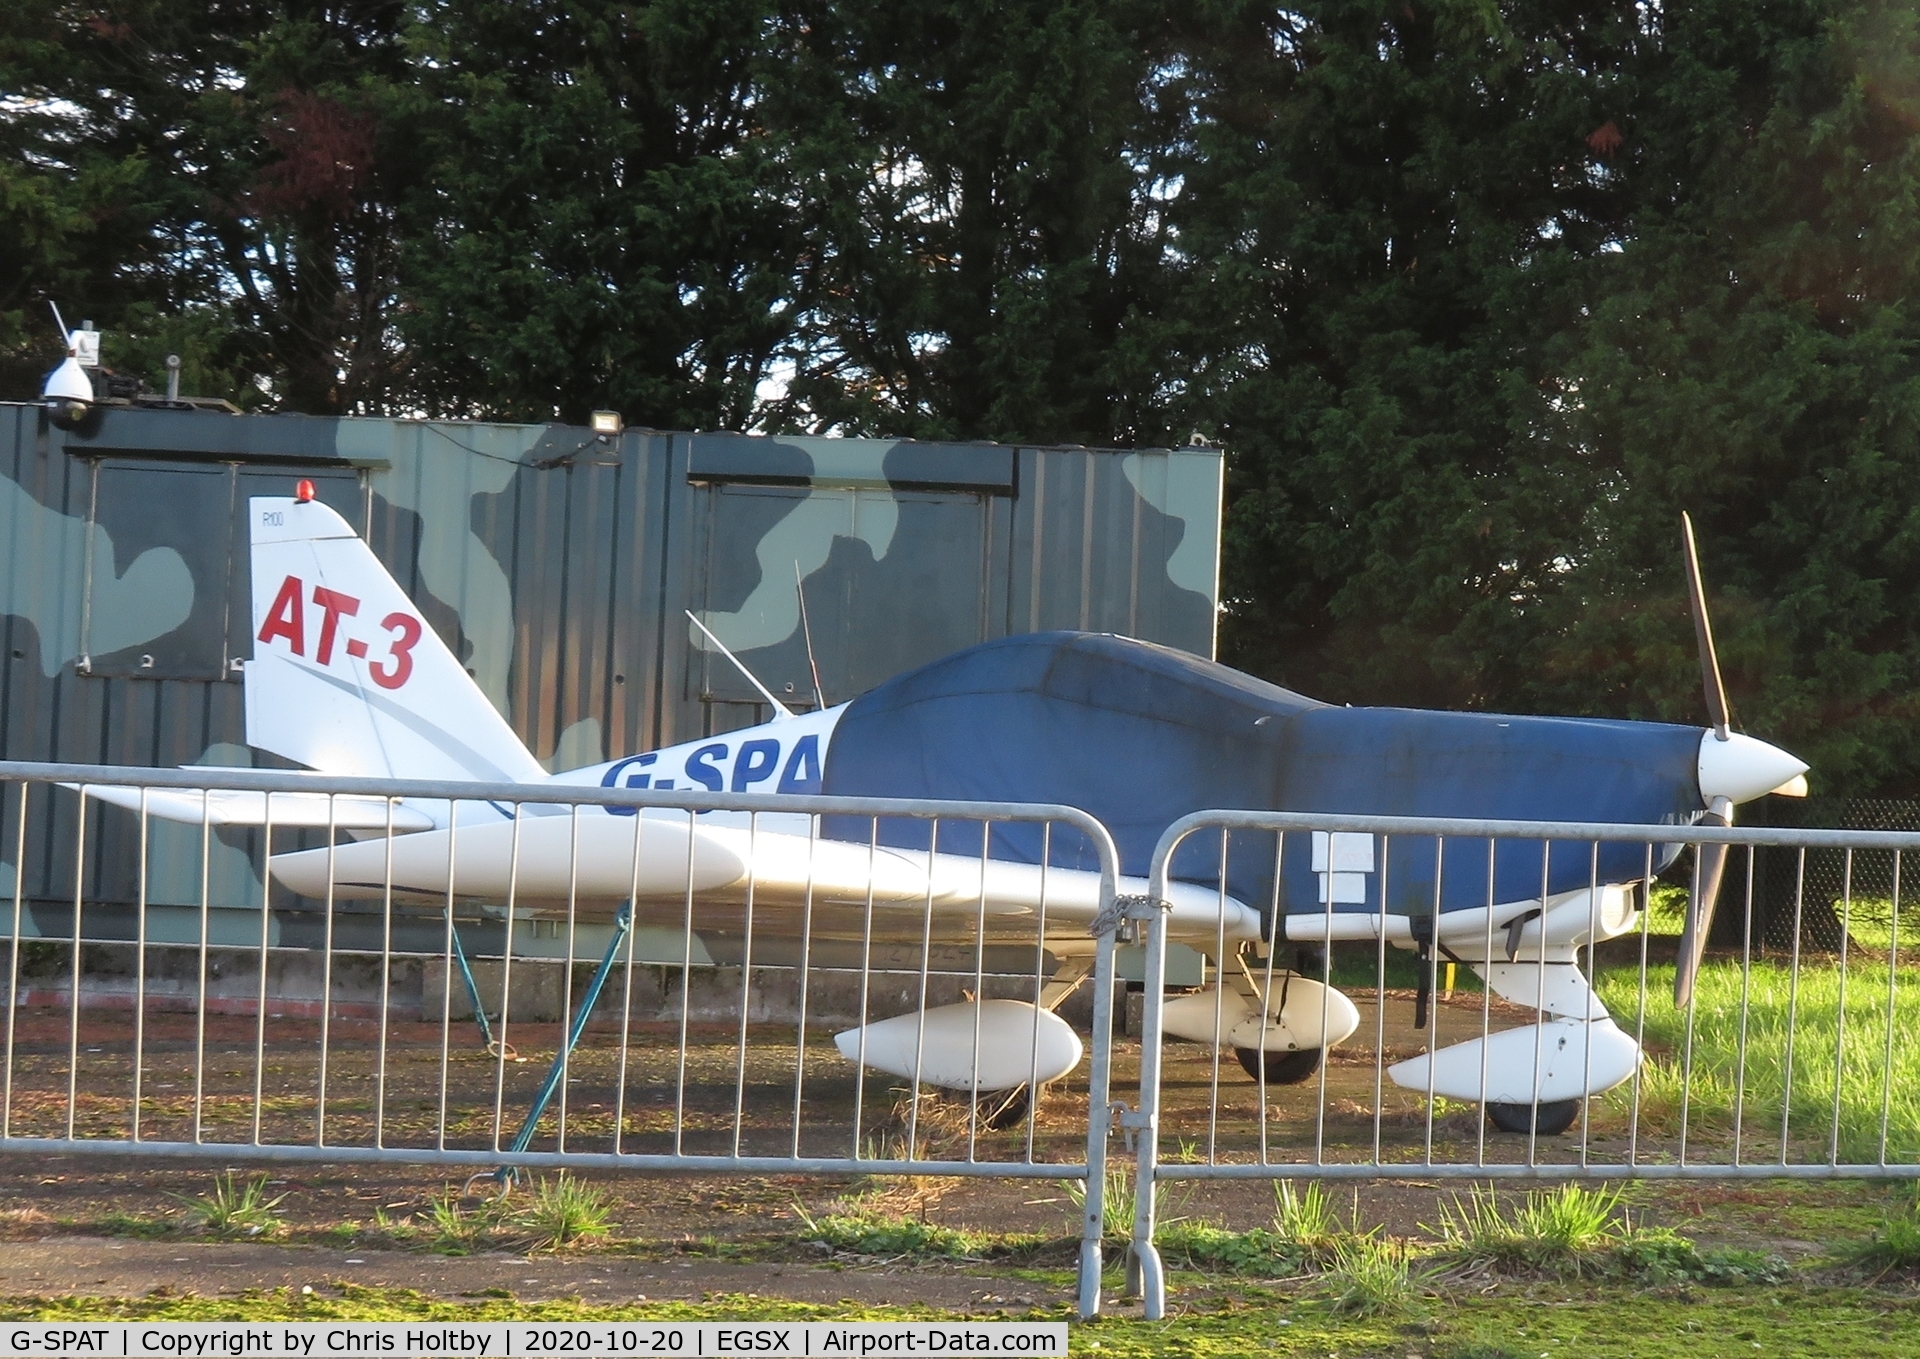 G-SPAT, 2003 Aero AT-3 R100 C/N AT3-008, Parked and covered at North Weald